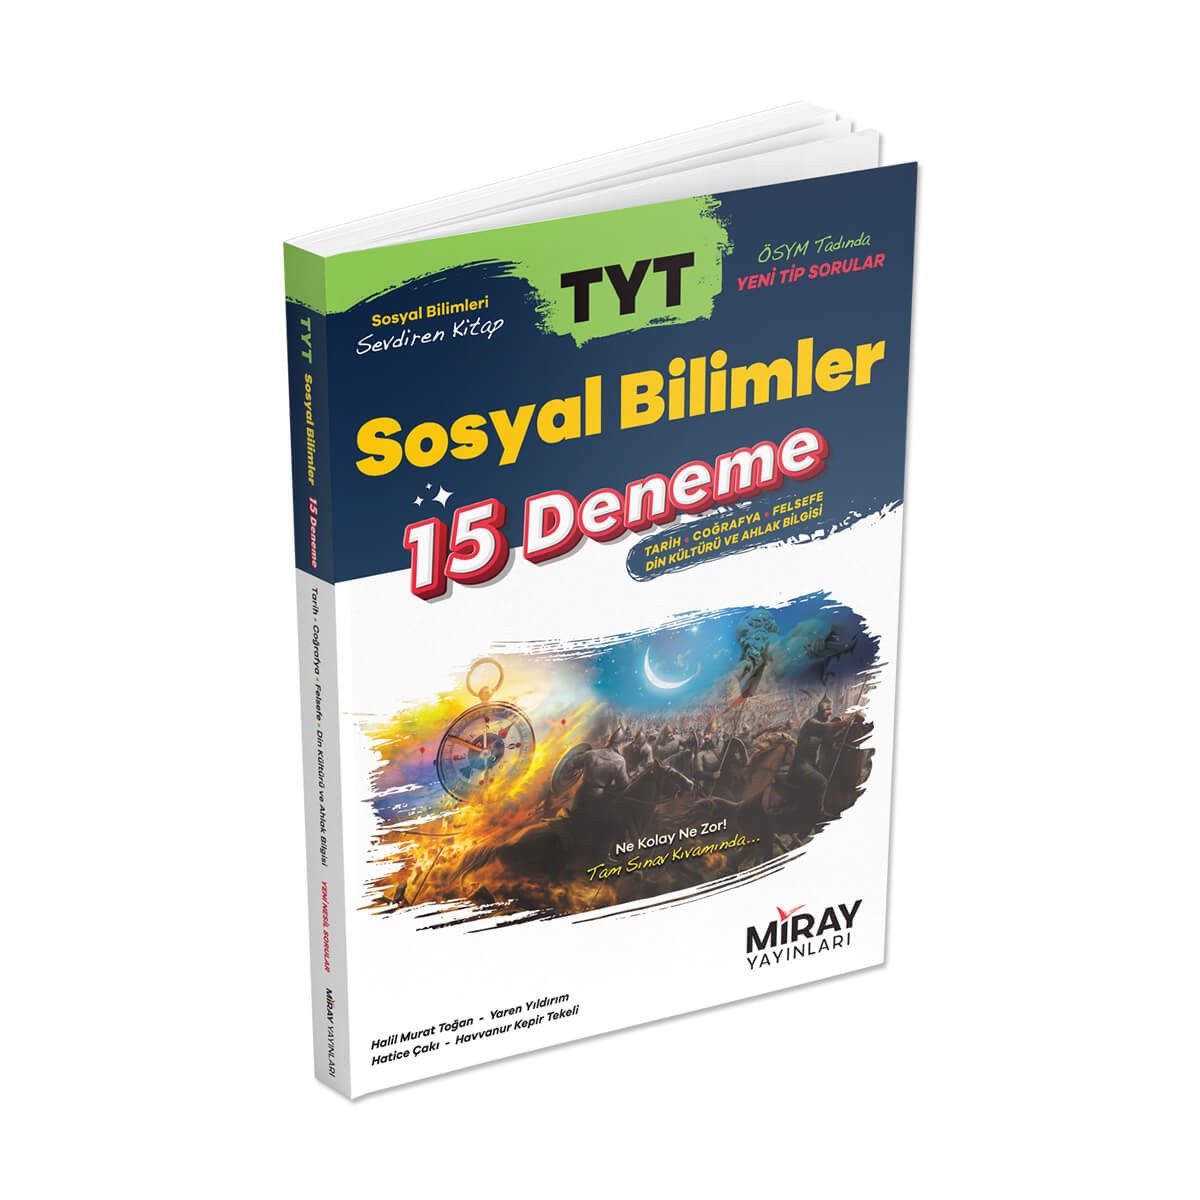 Miray Yayınları Tyt Sosyal Bilimler 15 Deneme